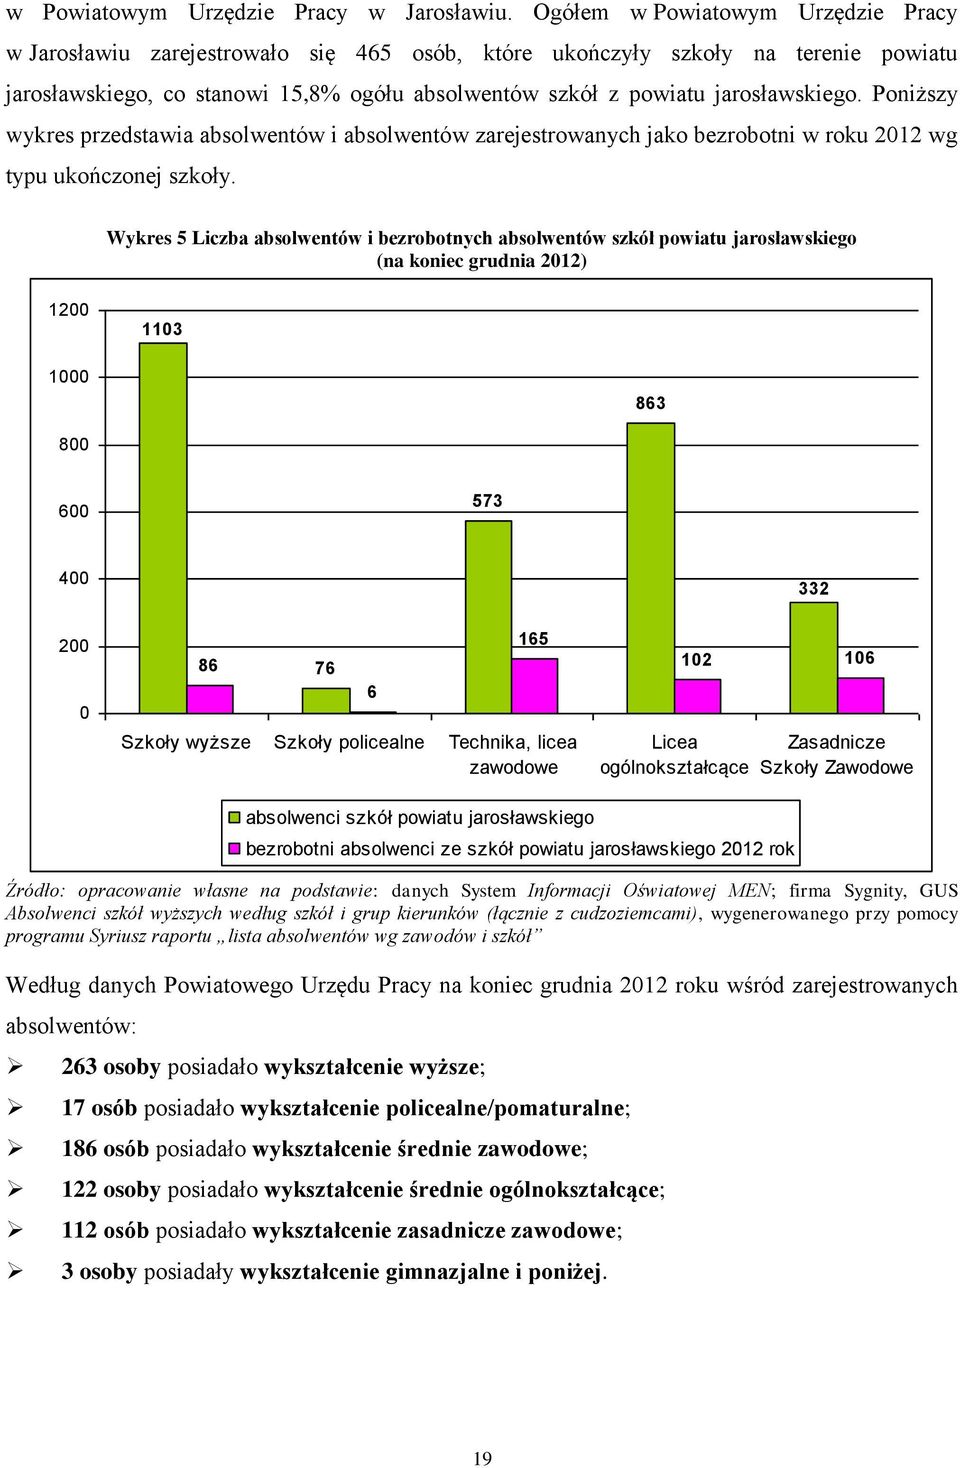 jarosławskiego. Poniższy wykres przedstawia absolwentów i absolwentów zarejestrowanych jako bezrobotni w roku 2012 wg typu ukończonej szkoły.